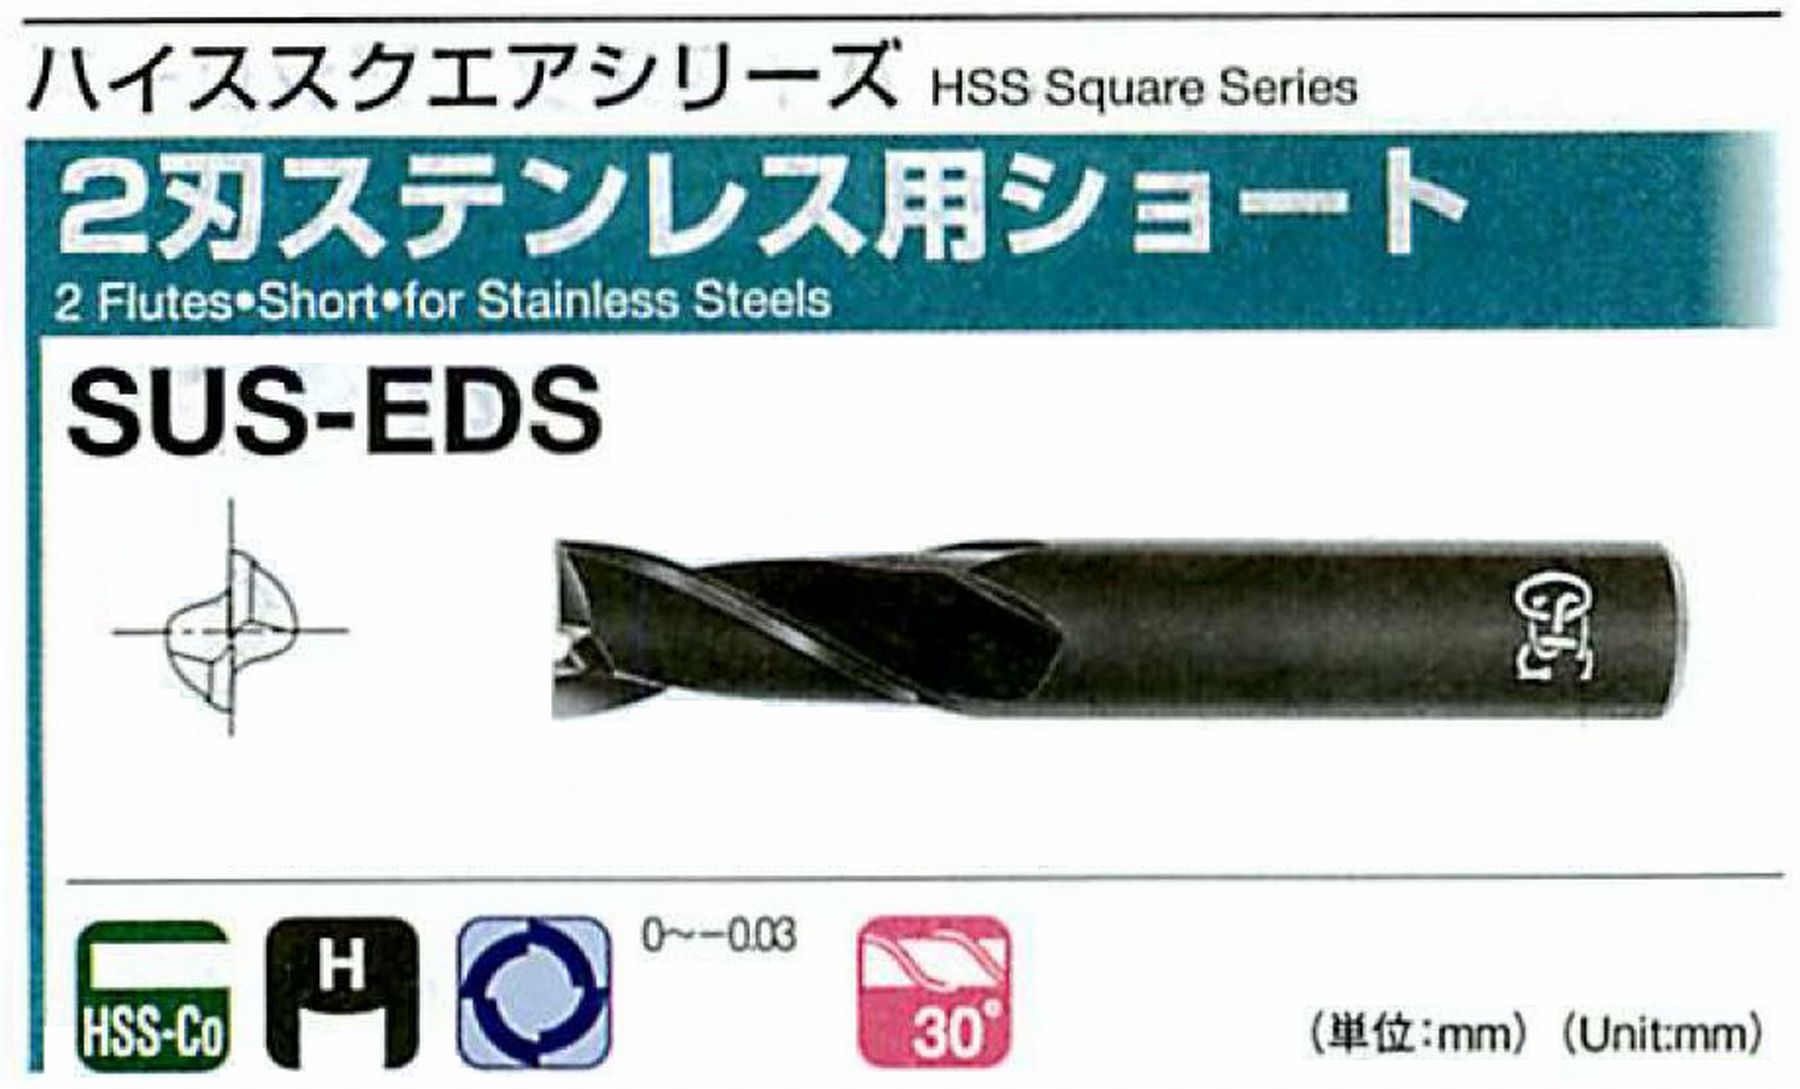 オーエスジー/OSG 2刃ステンレス用ショート SUS-EDS 外径3 全長50 刃長8 シャンク径6mm